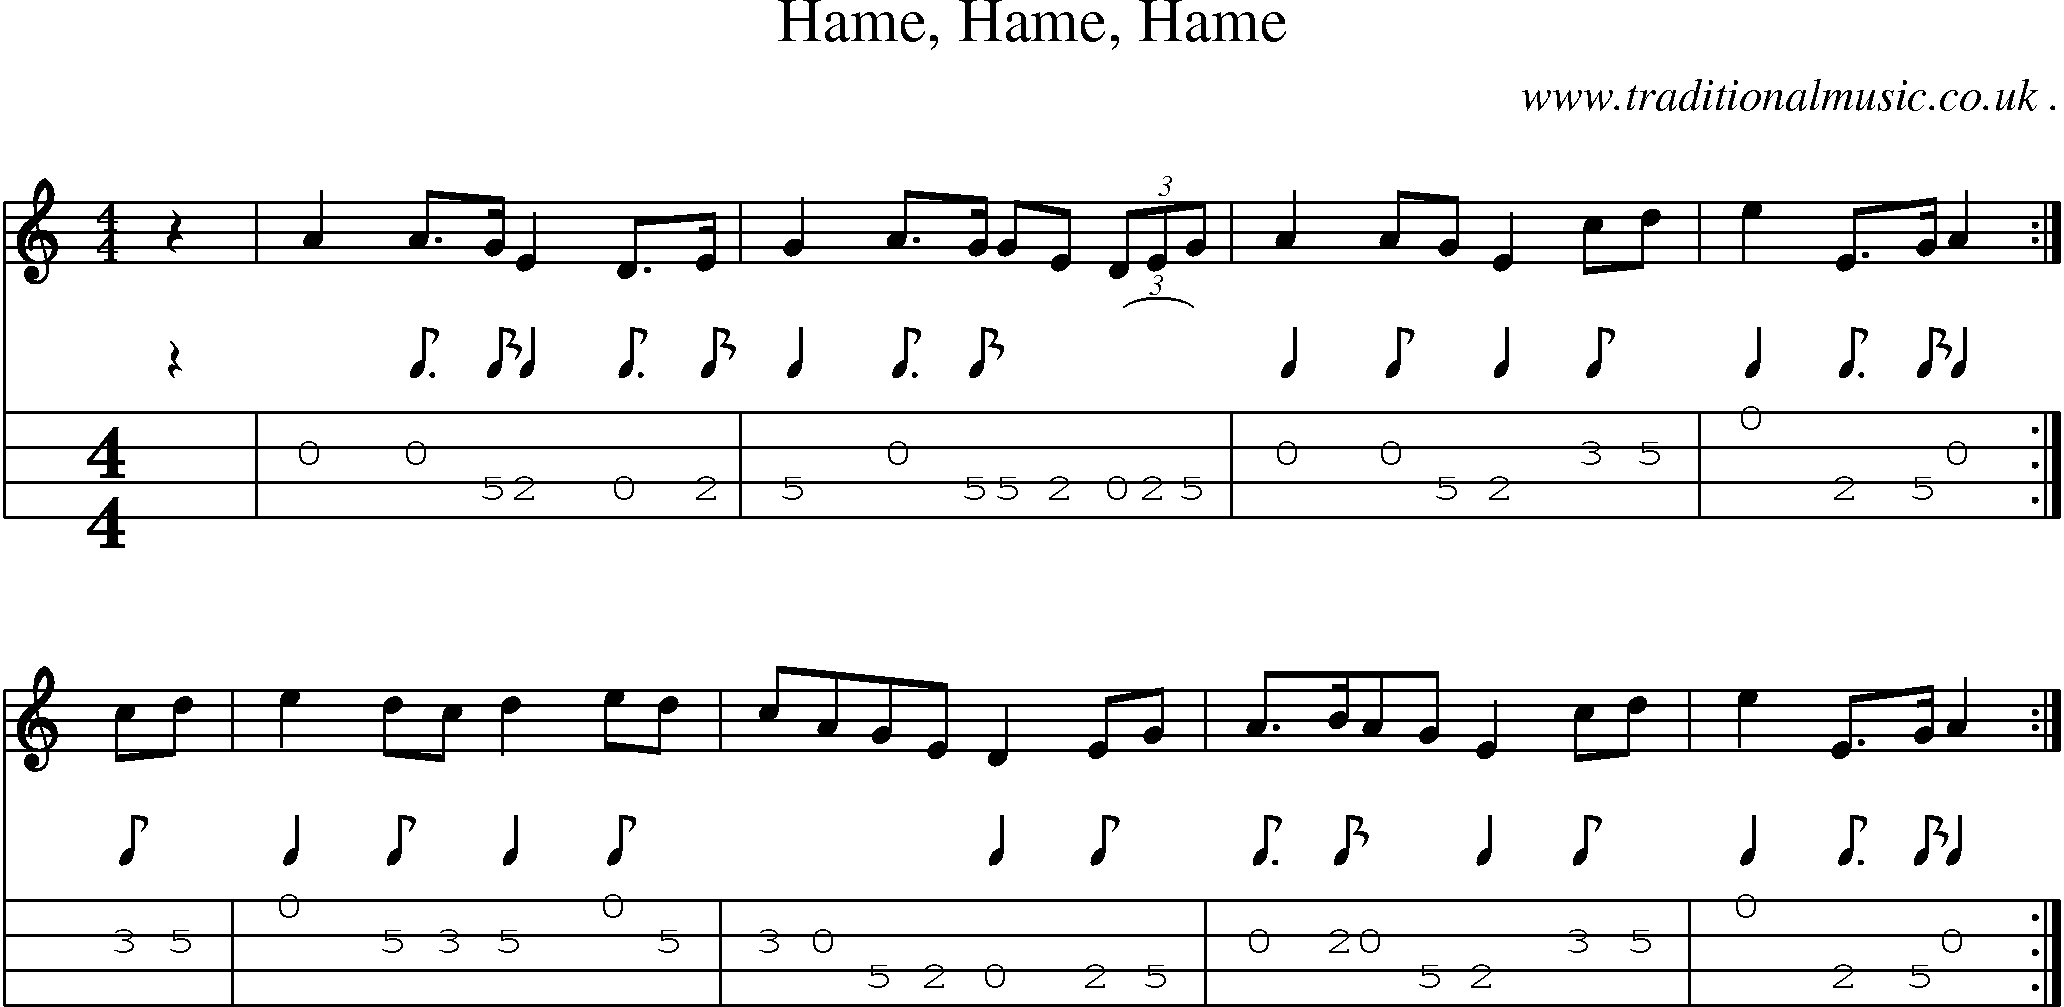 Sheet-music  score, Chords and Mandolin Tabs for Hame Hame Hame